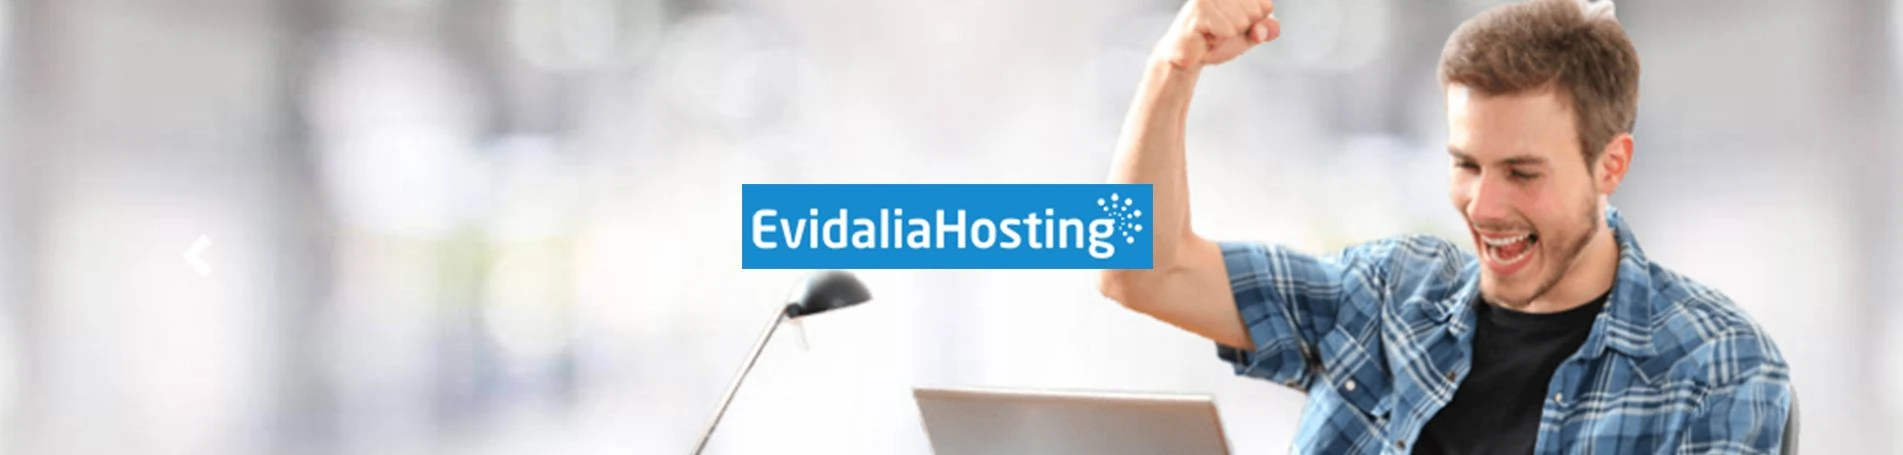 Evidalia Hosting, nuevo cliente online Marketing Outsourcing en Valencia